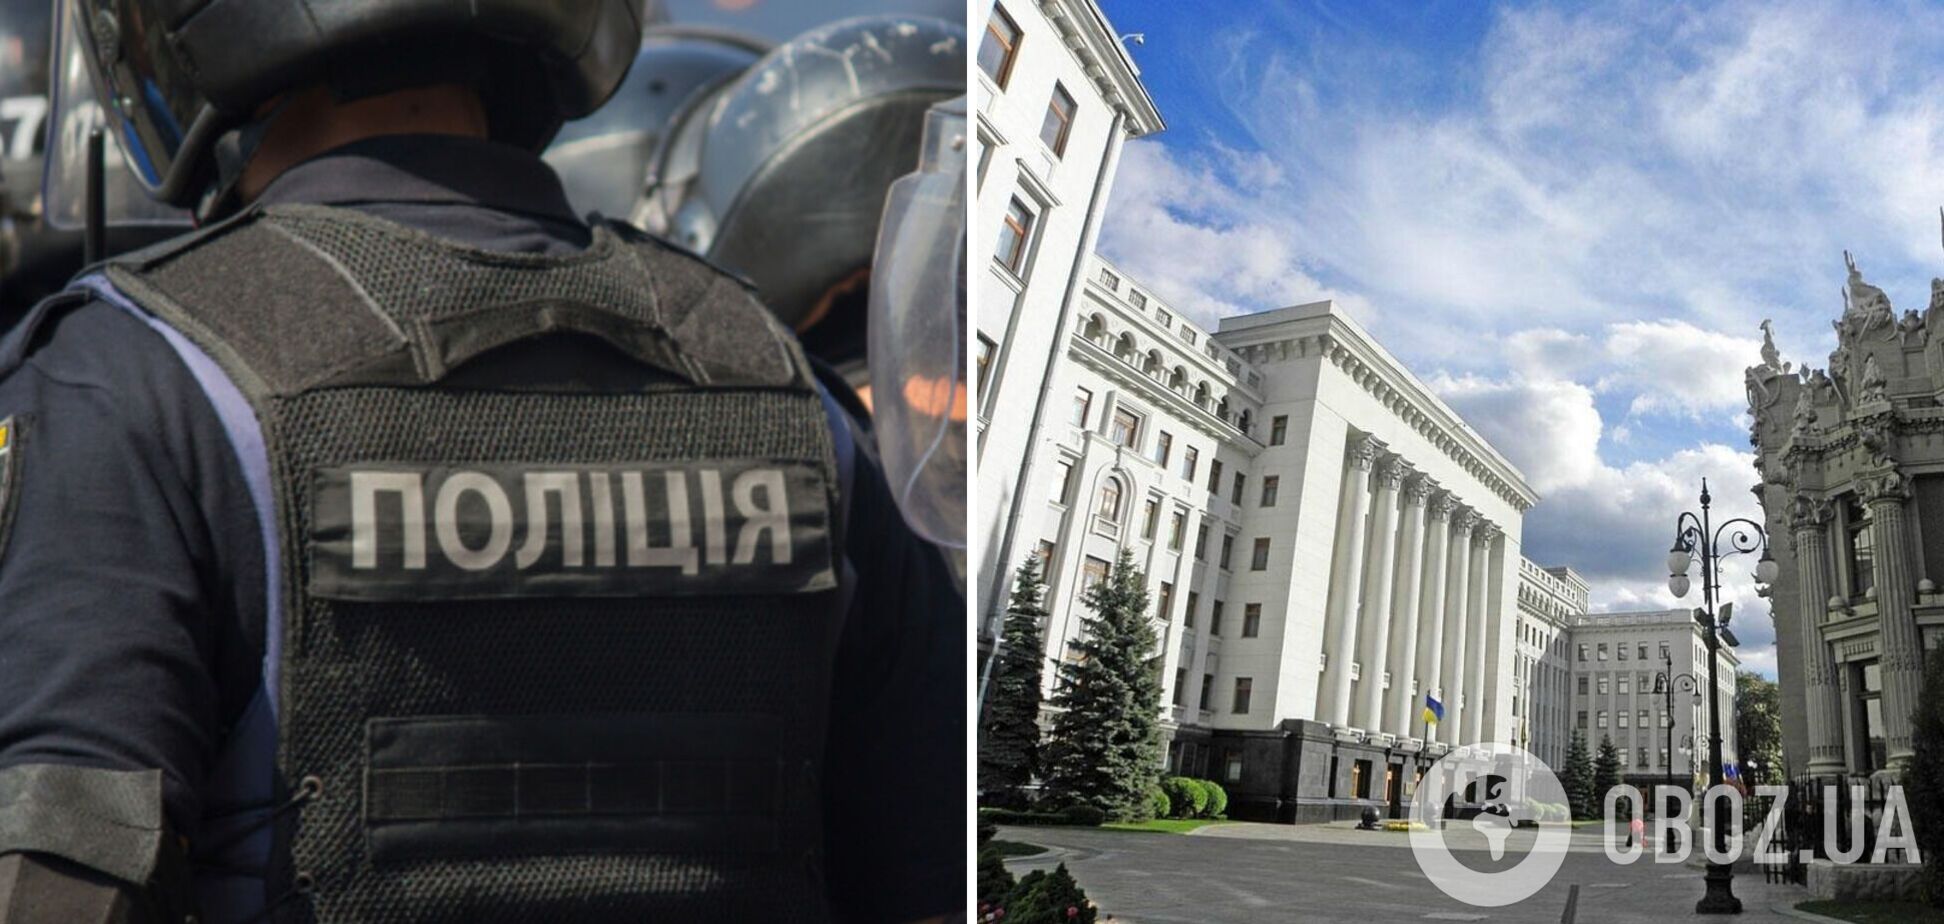 Нацполіція України запобігла теракту проти керівництва країни, – Єнін